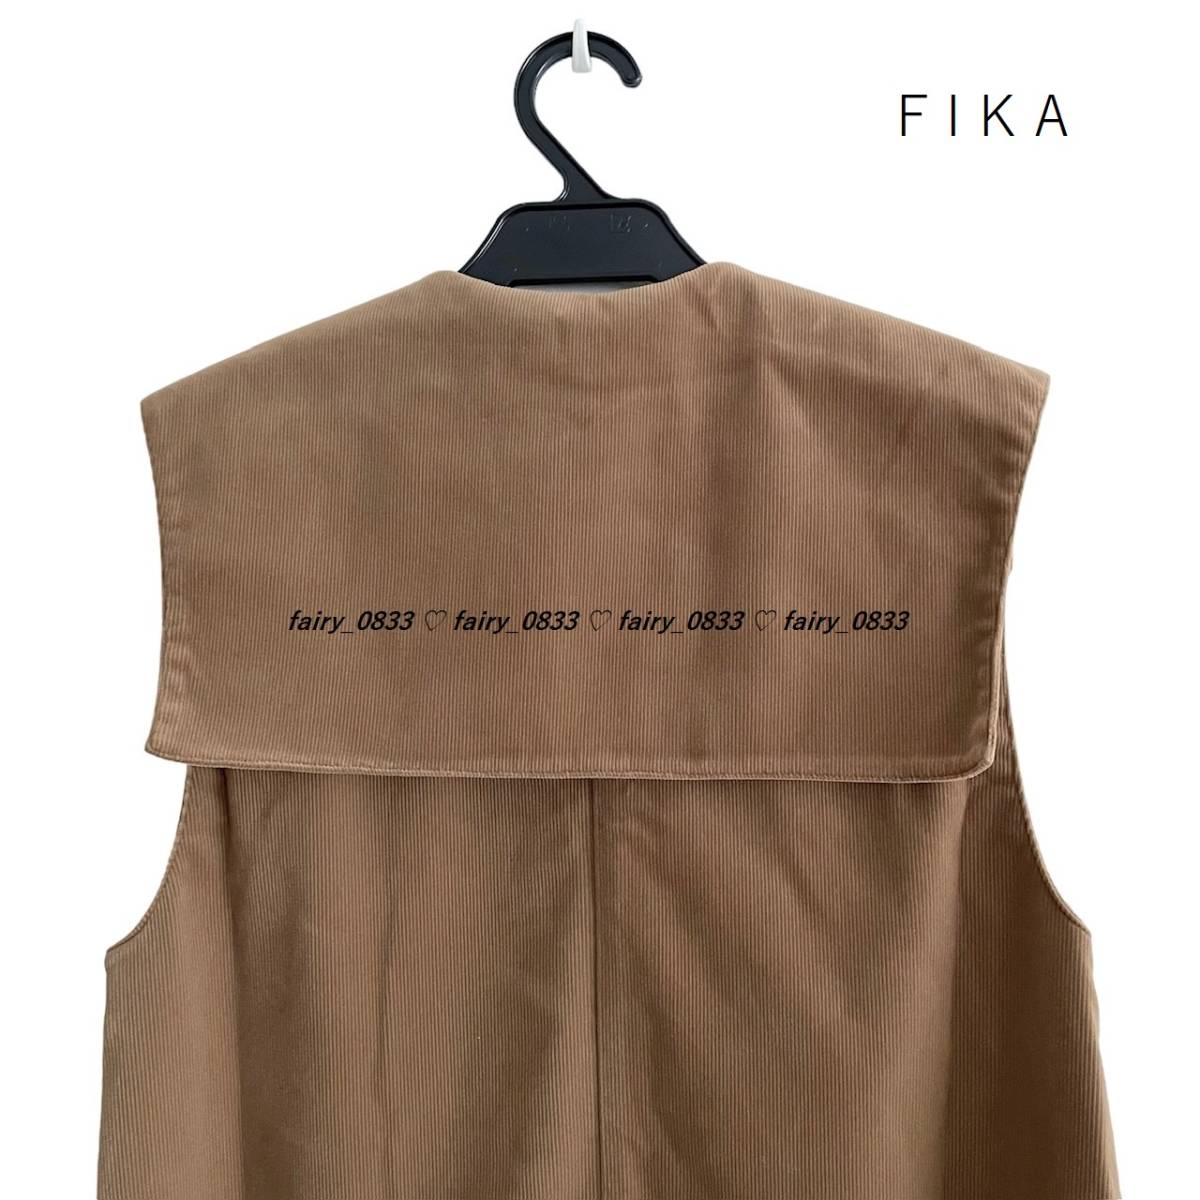 [ бесплатная доставка ] обычная цена 12000 иен новый товар # Scott Club FIKA# взрослый режим . Layered стиль...! маленький call * универсальный выполненный в строгом стиле цвет длинный жилет 